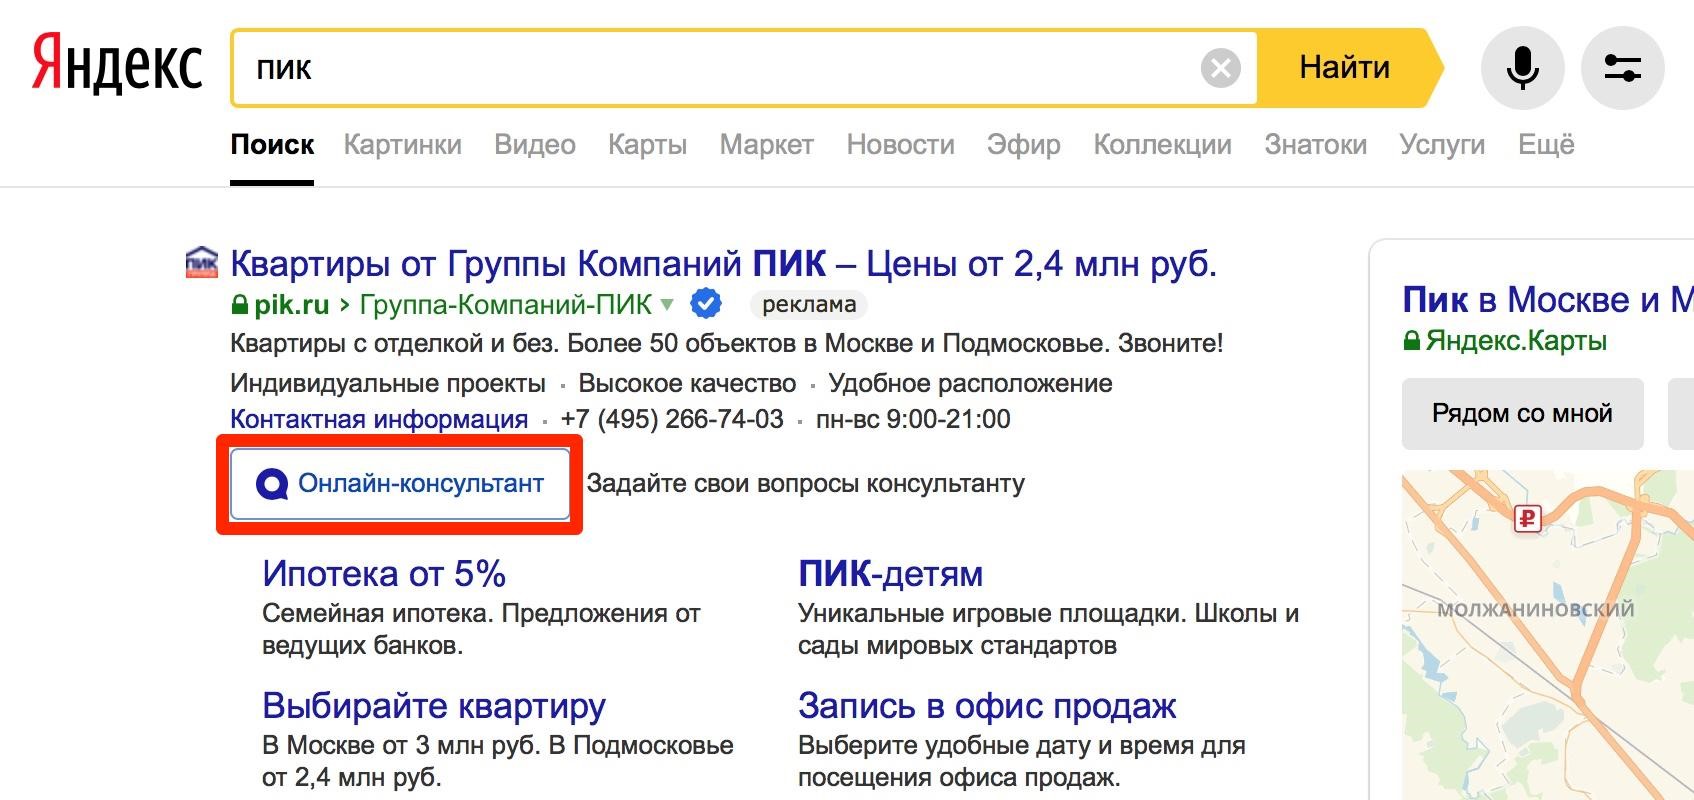 Установить местоположение в яндексе. Найти по фото в Яндексе местоположения.